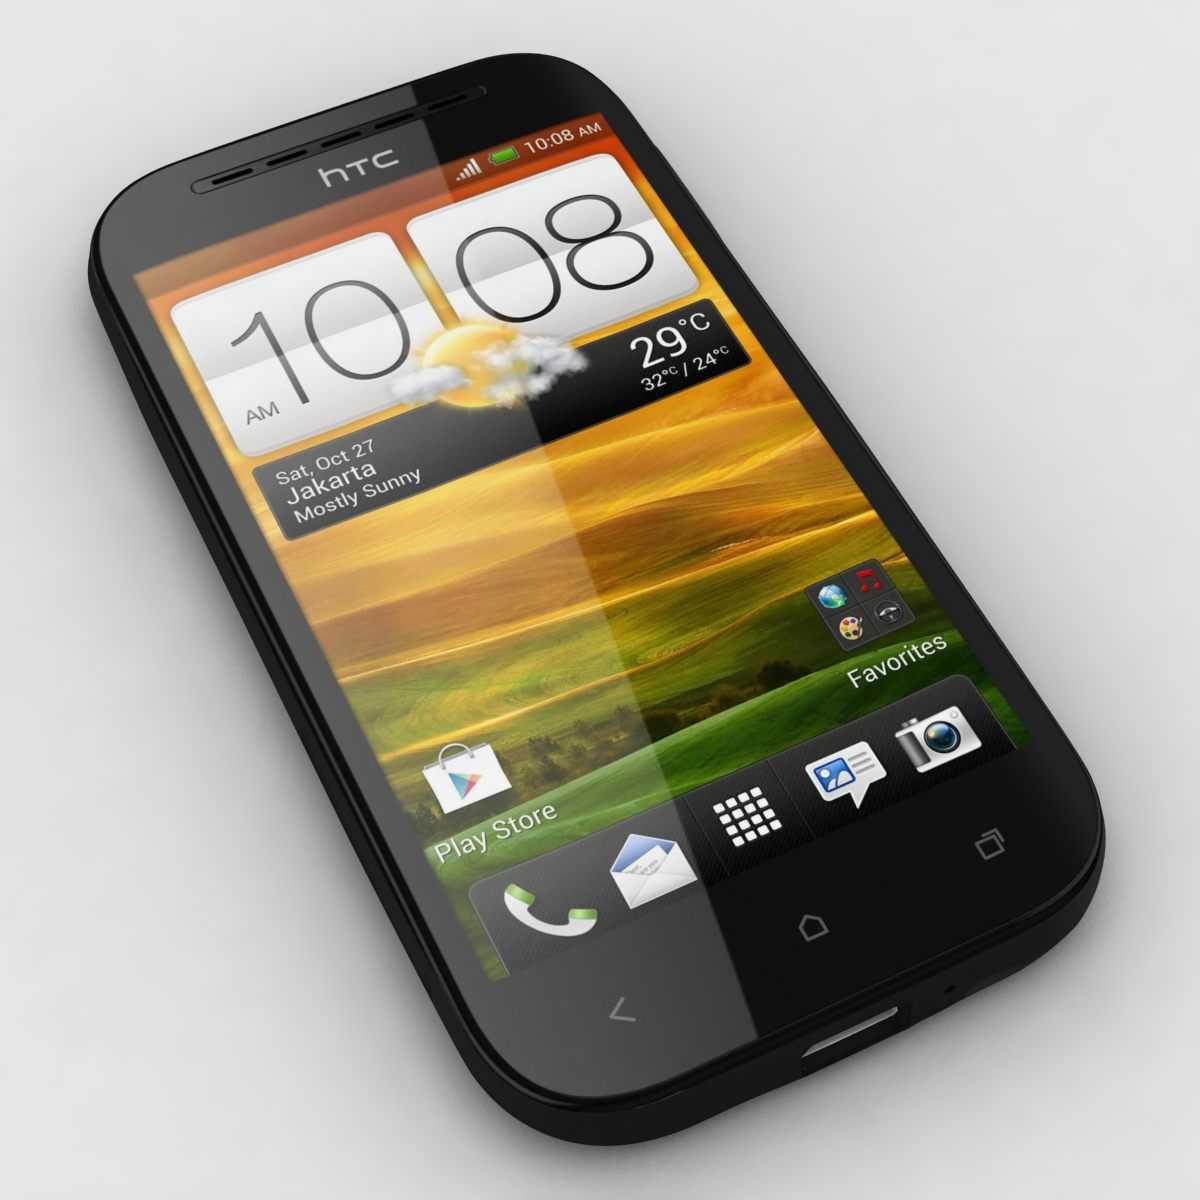 Мобильный телефон HTC Desire SV - подробные характеристики обзоры видео фото Цены в интернет-магазинах где можно купить мобильный телефон HTC Desire SV